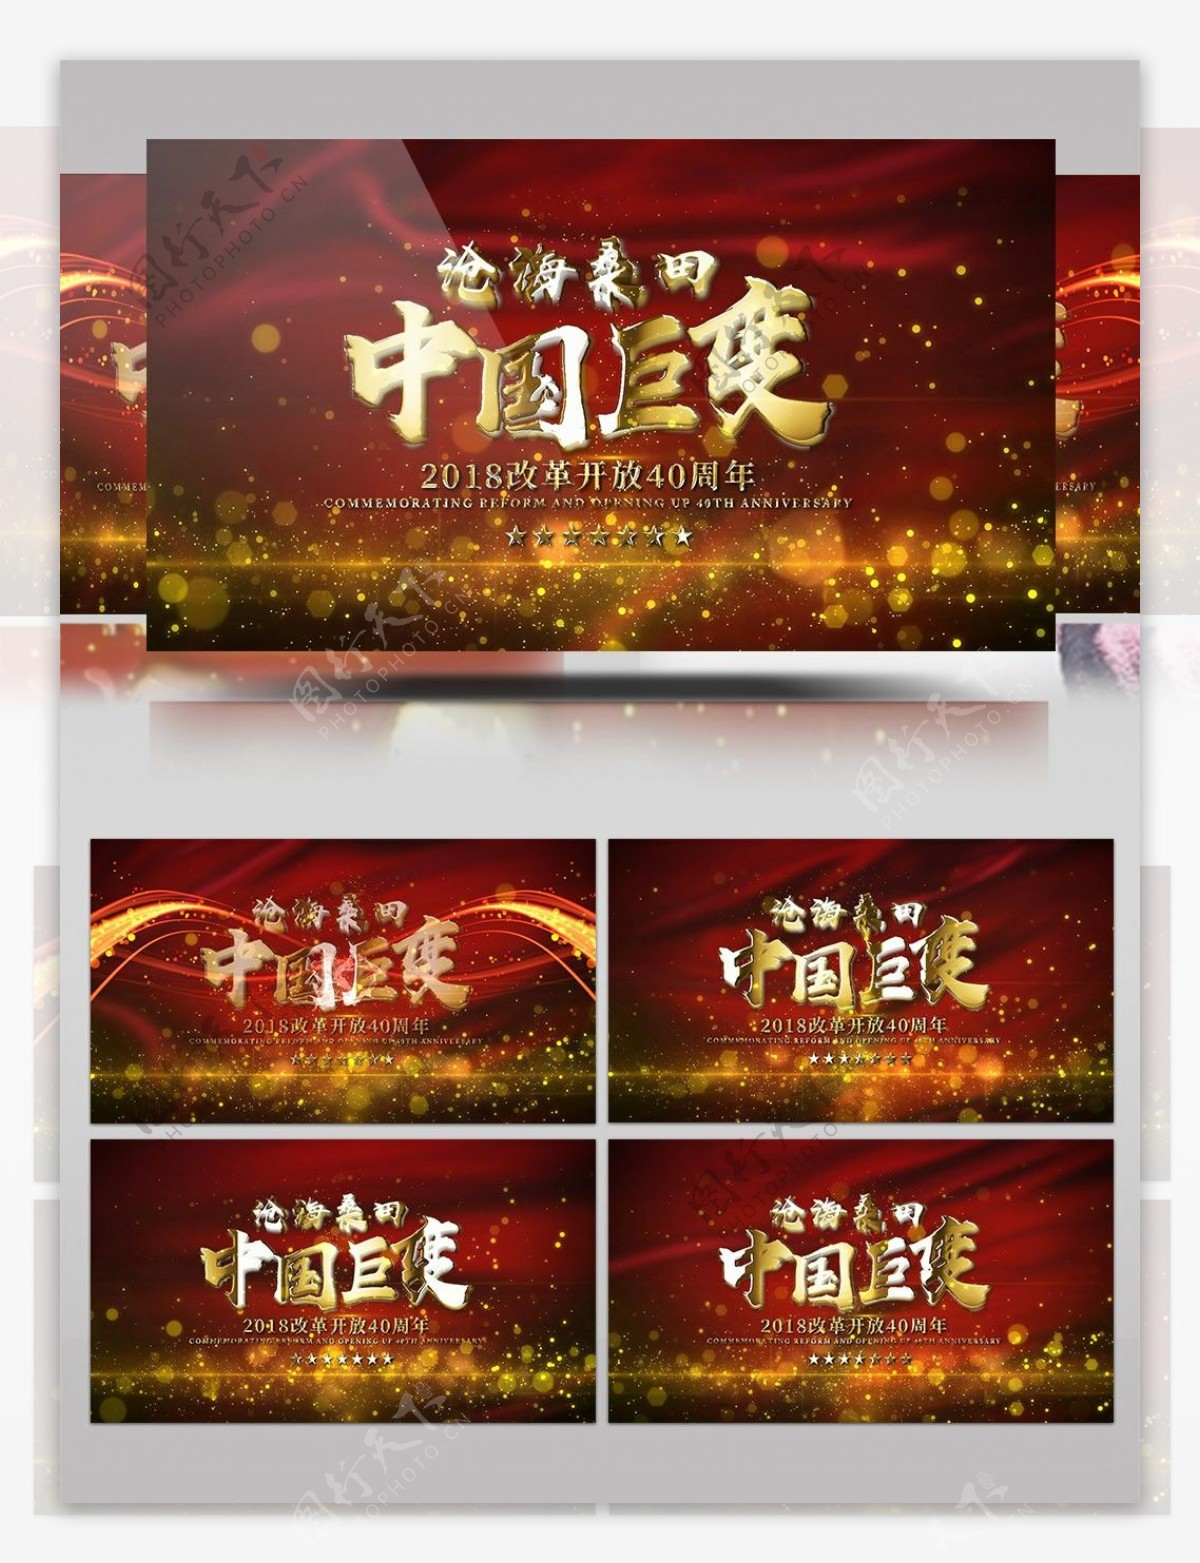 党政红绸粒子背景改革开放宣传片AE模板